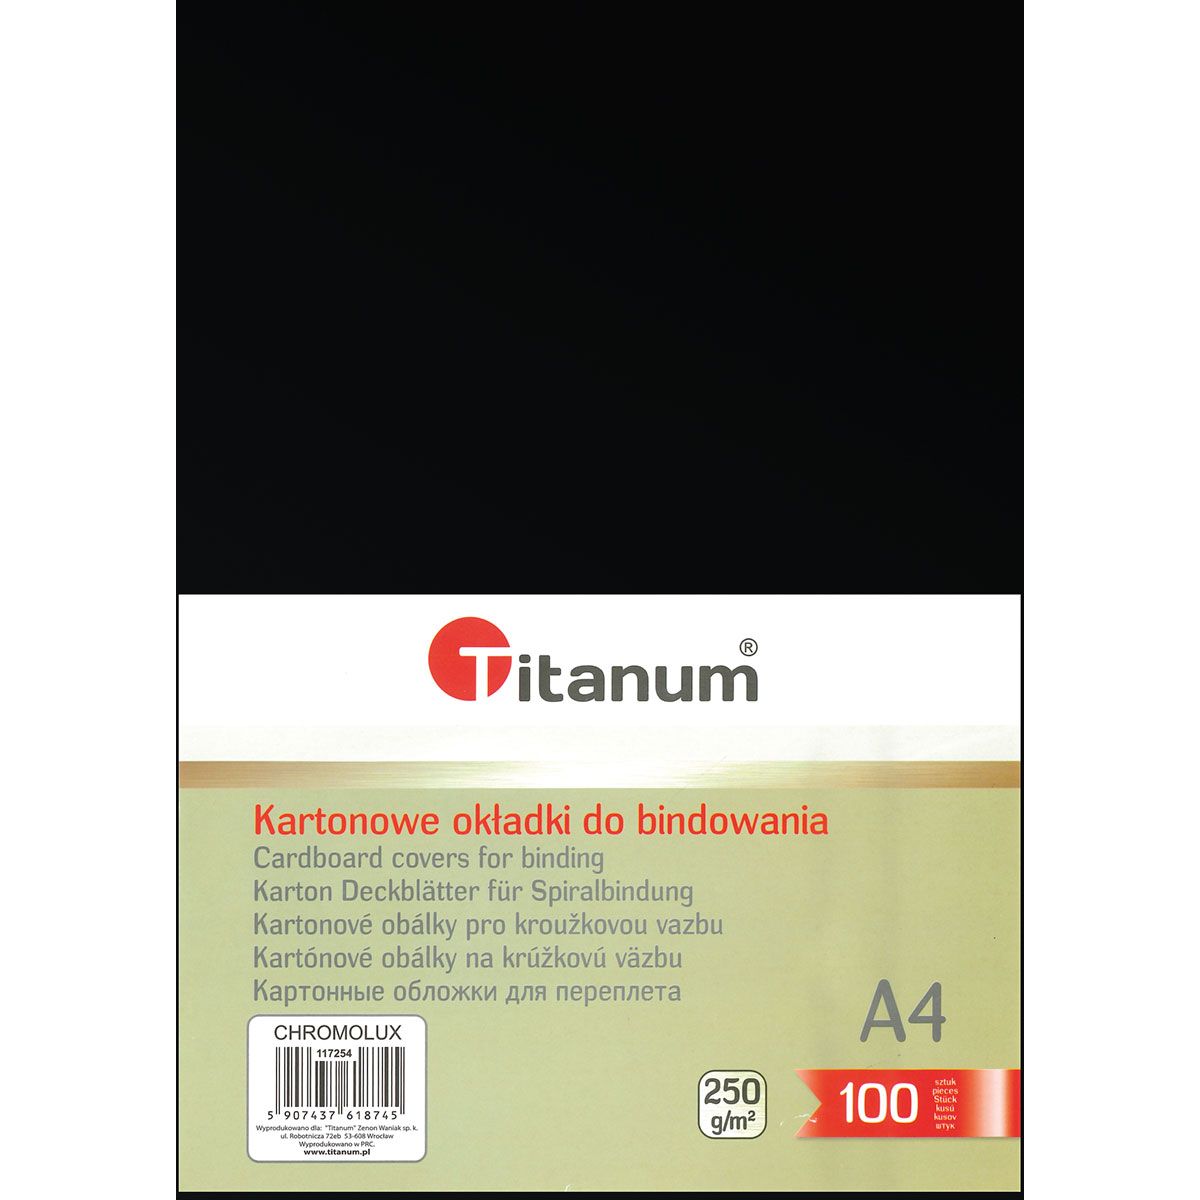 Karton do bindowania błyszczący - chromolux A4 czarny 250g Titanum